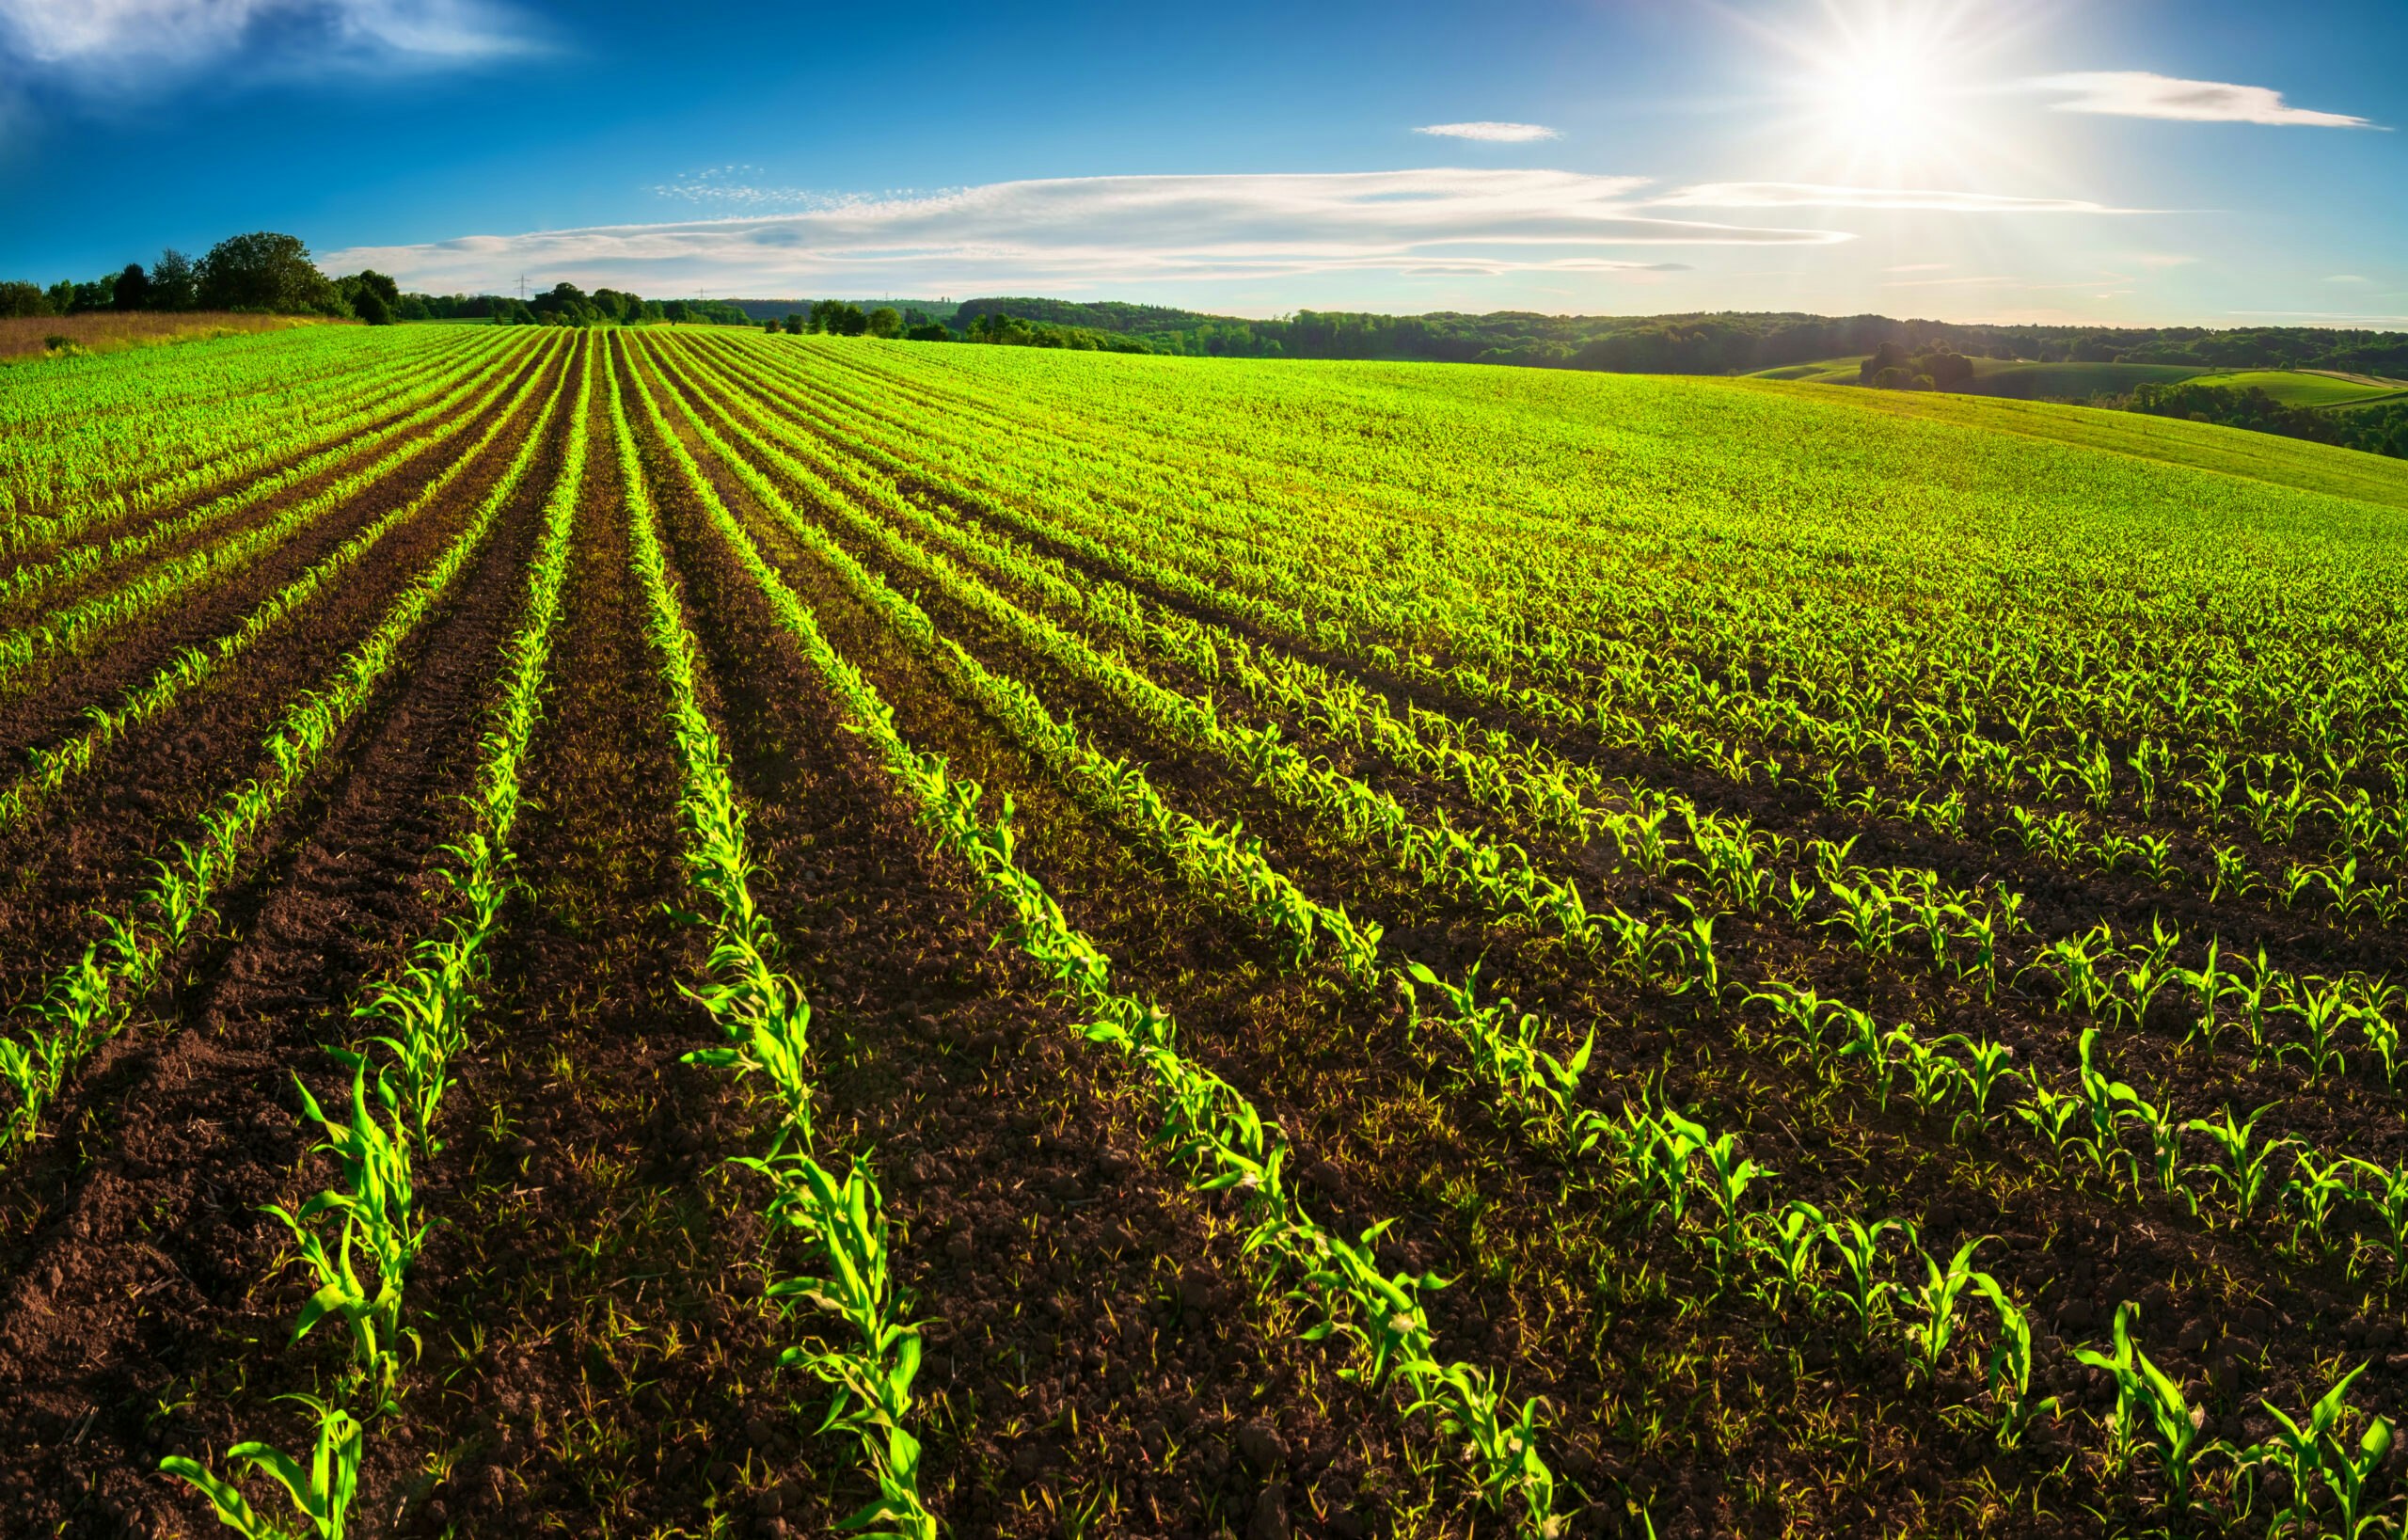 Les consommateurs considèrent l'agriculture et l'énergie comme des éléments clés pour limiter le changement climatique